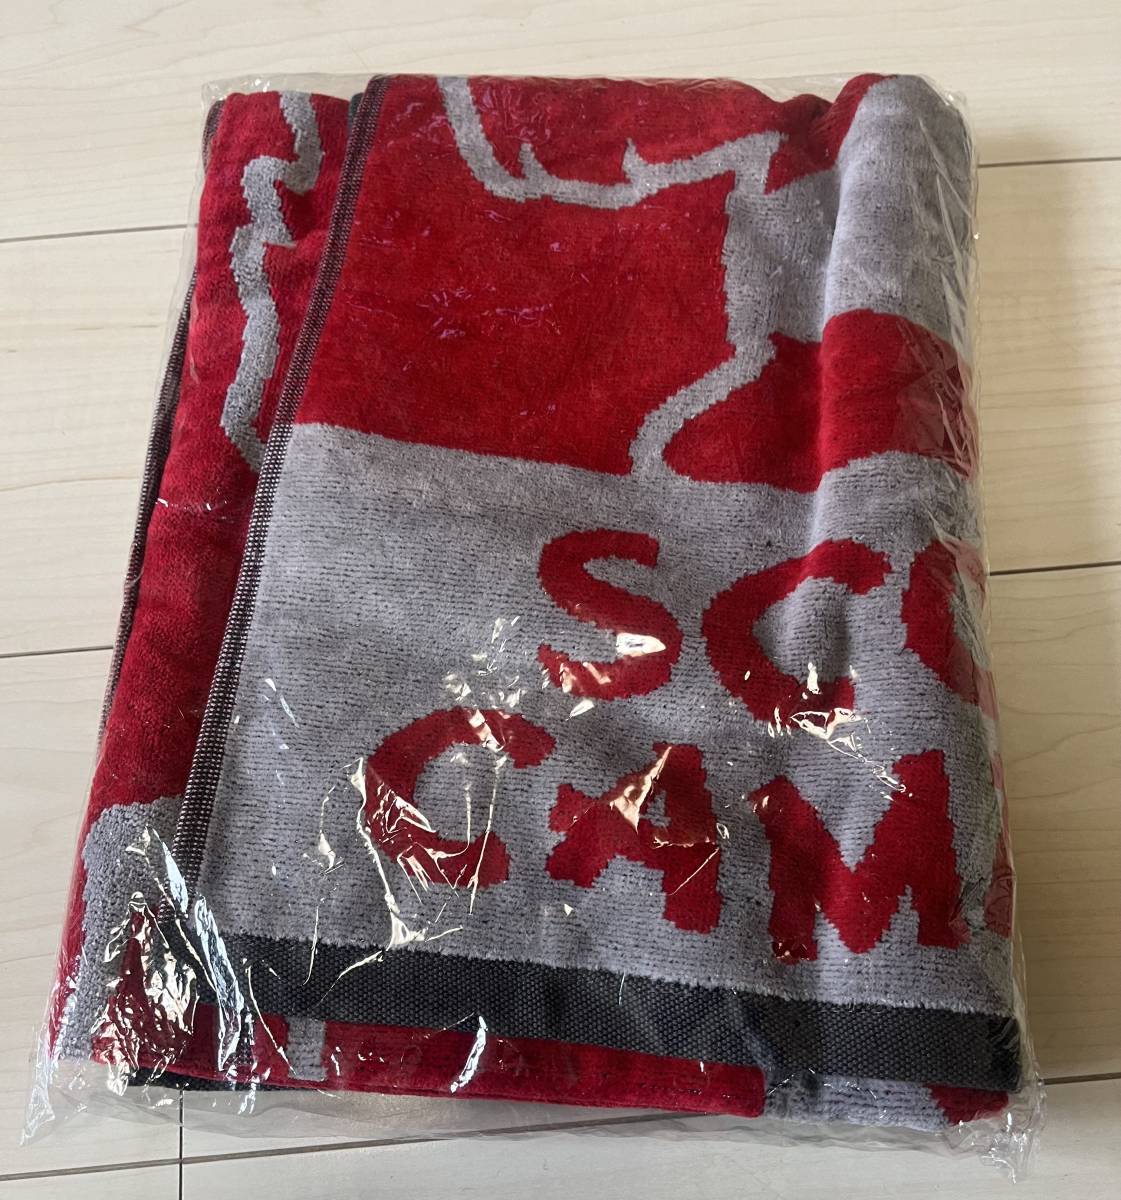  Scotty Cameron Japan собака Golf полотенце сумка полотенце красный × серый Япония ограничение 